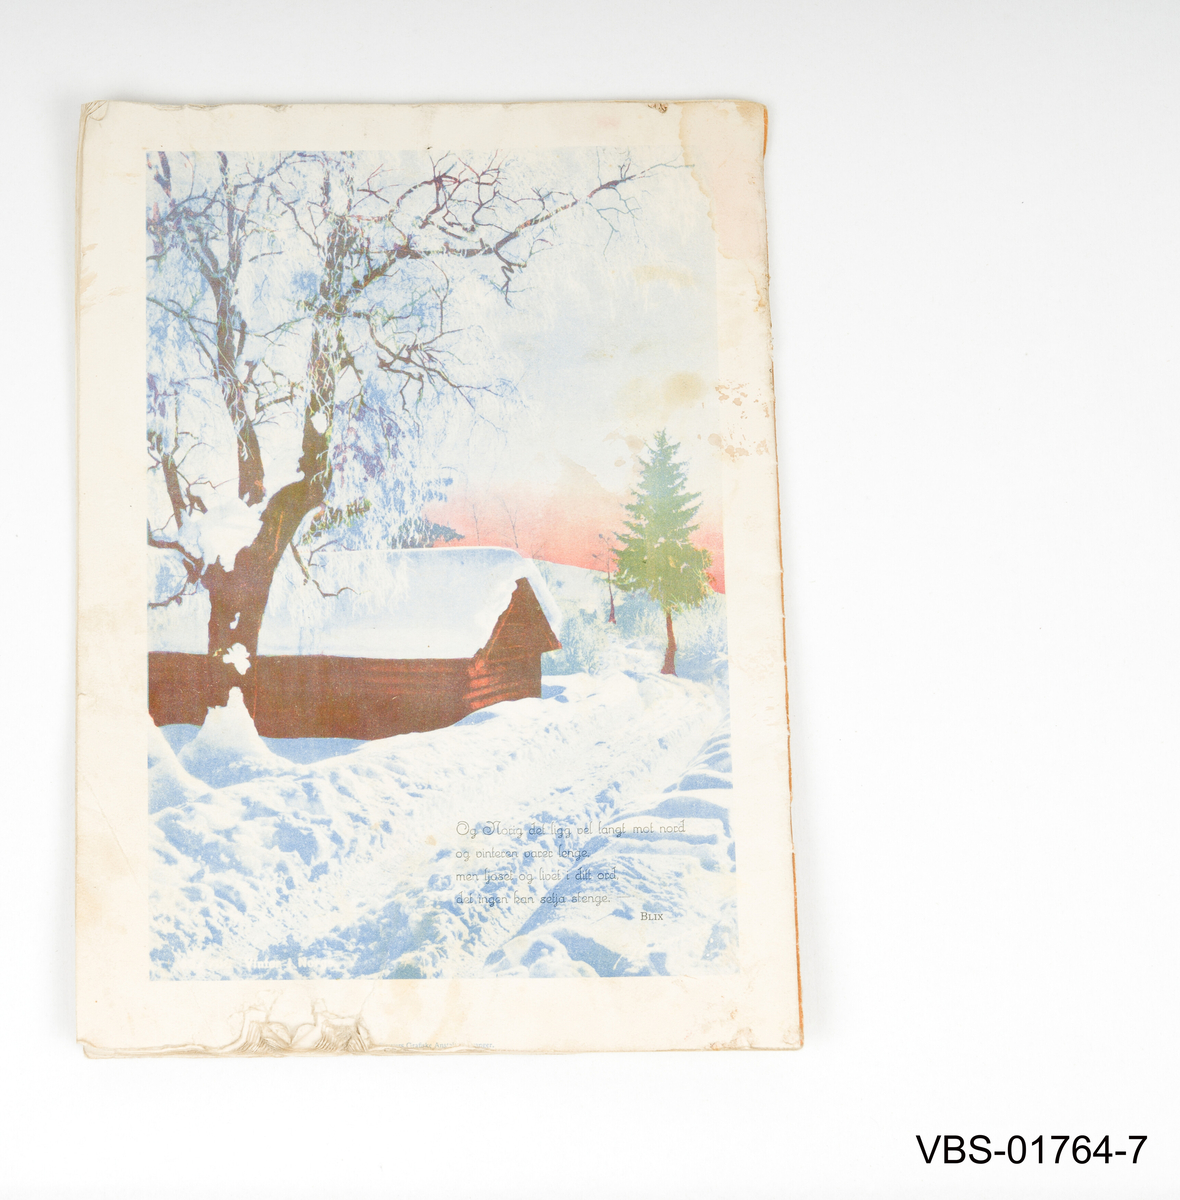 Jule motiv: En kvinne i bunad leser ved vinduet. Vinterlandskap med sol, snø og kirke i bakgrunnen.
Illustrert av Milly Heegaard (1942)